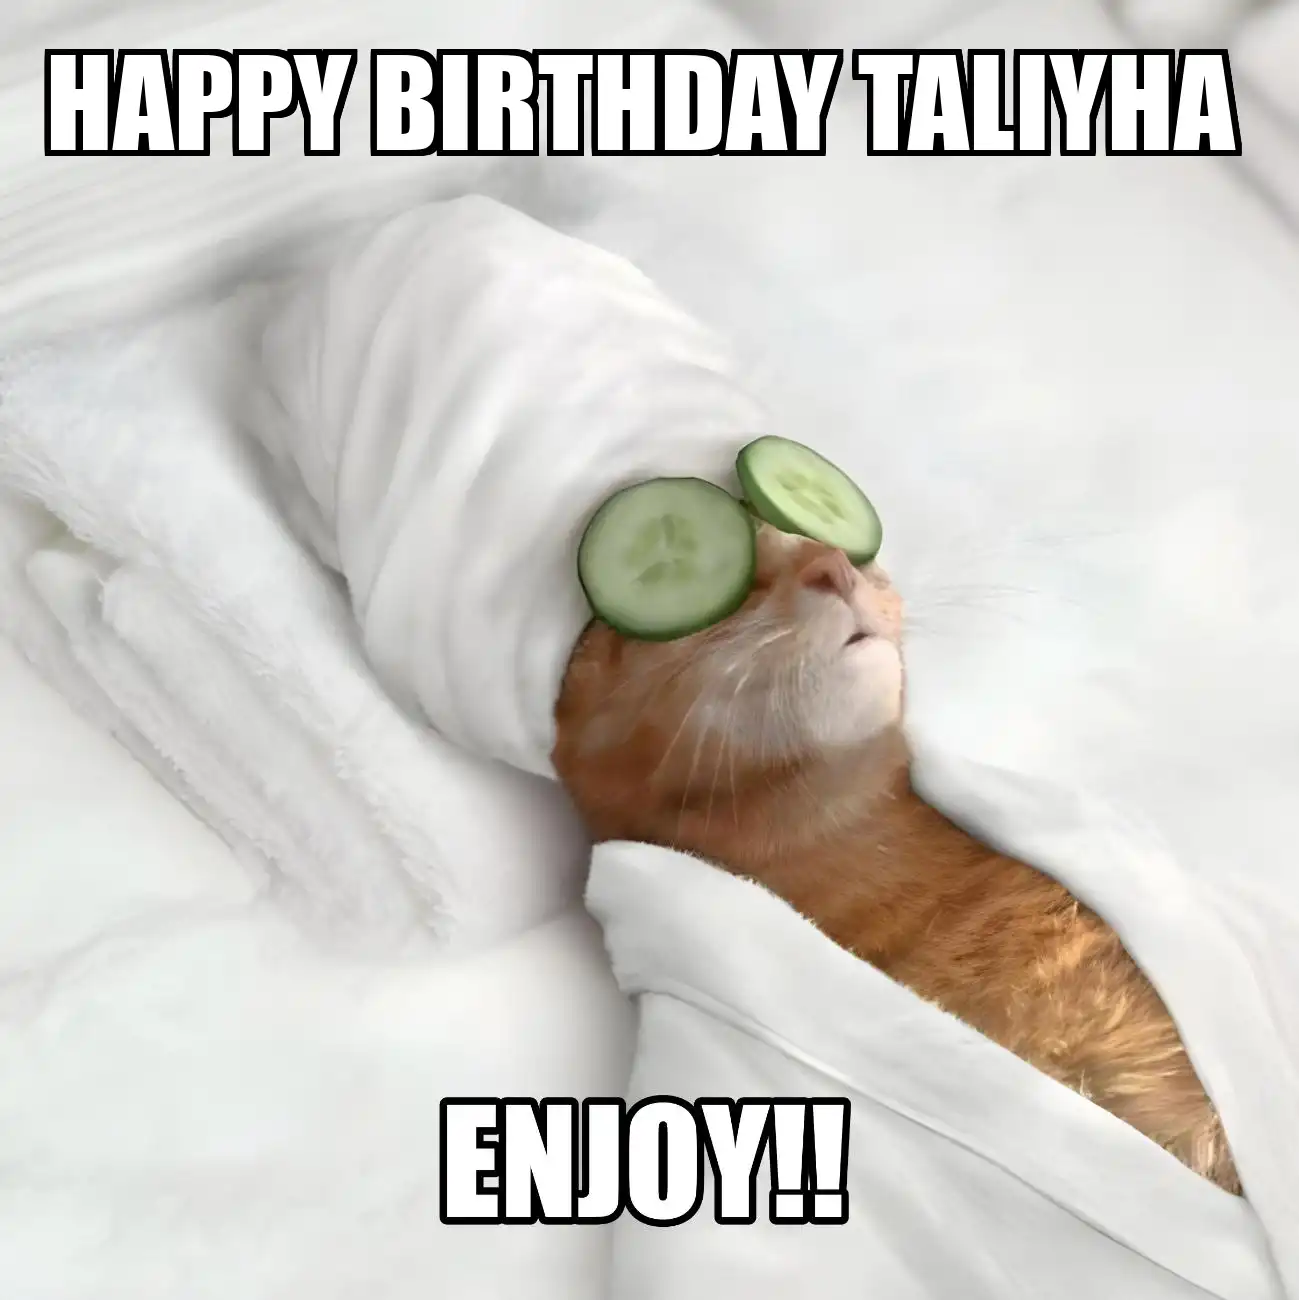 Happy Birthday Taliyha Enjoy Cat Meme